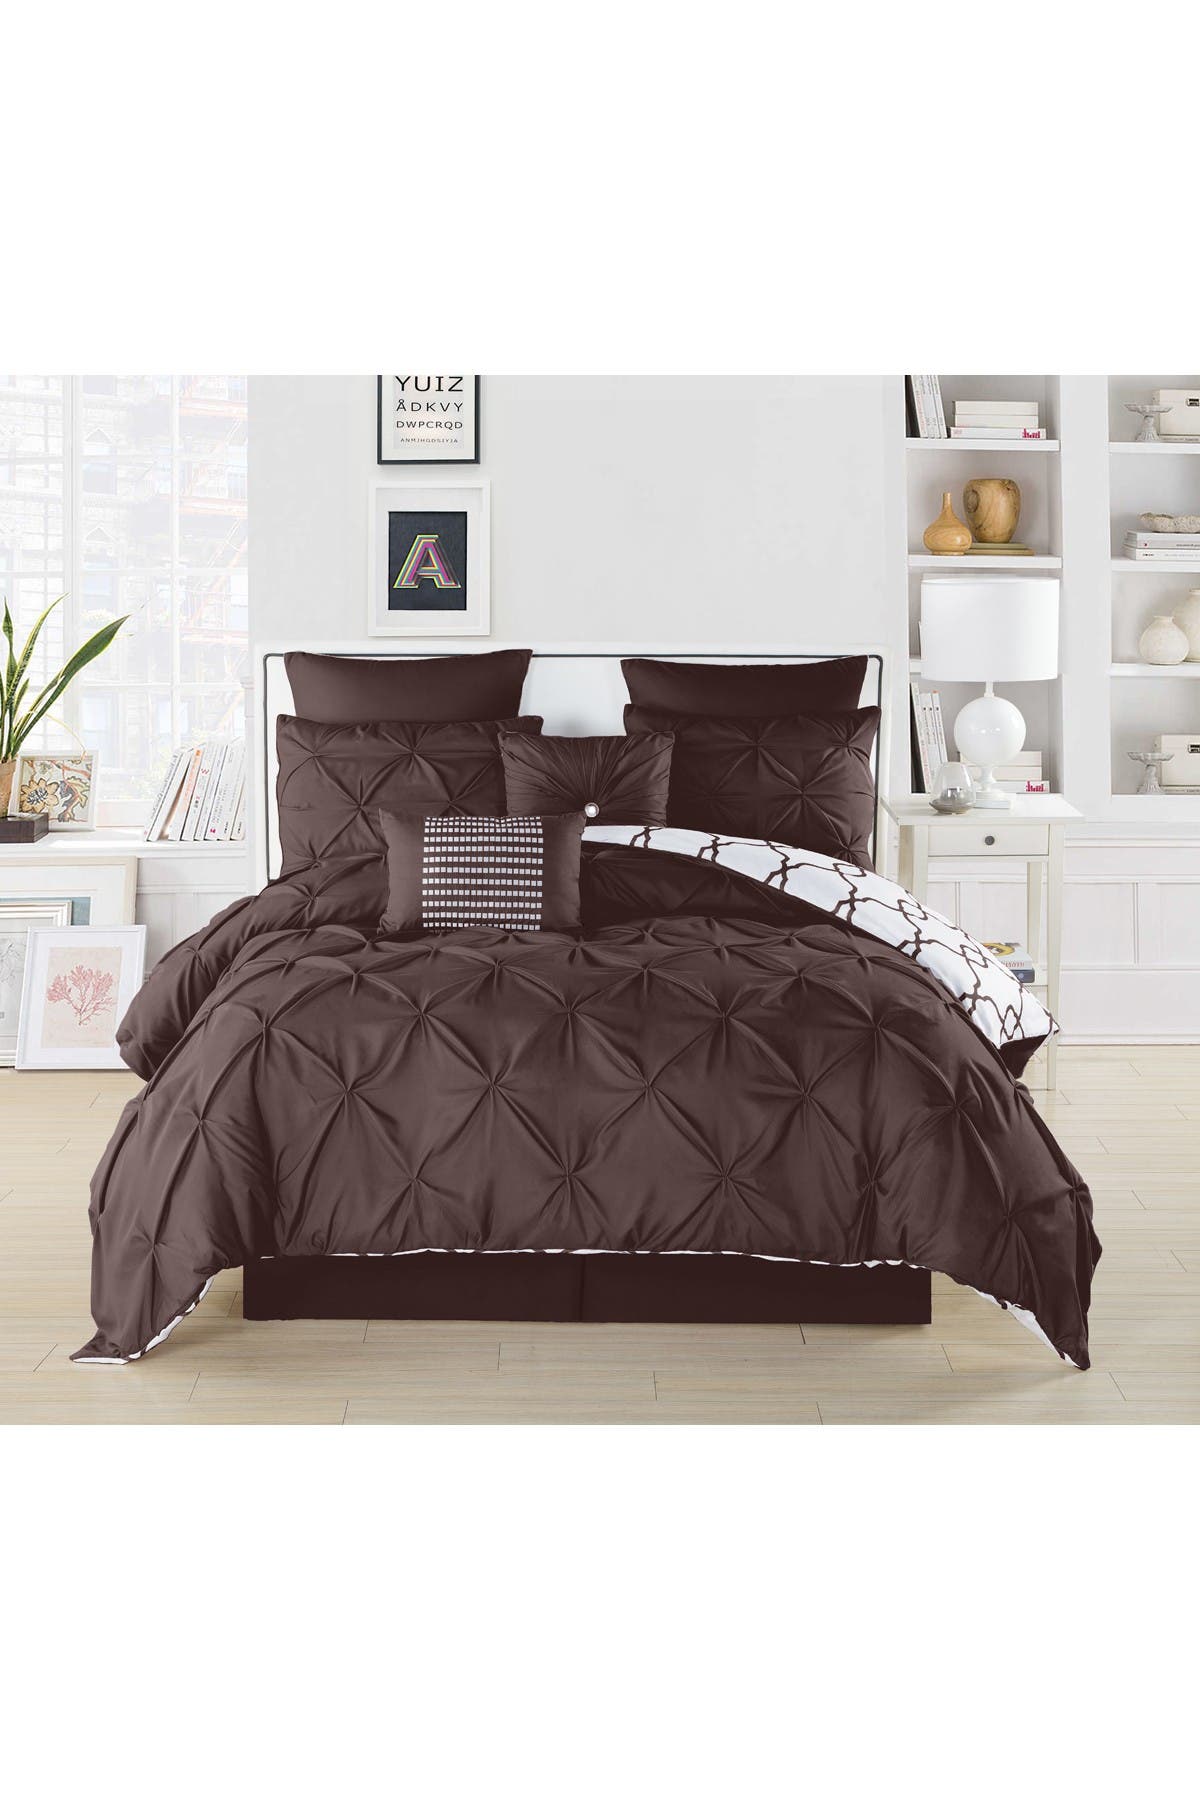 Duck River Textile Queen Esy Reversible Comforter Set Chocolate Nordstrom Rack